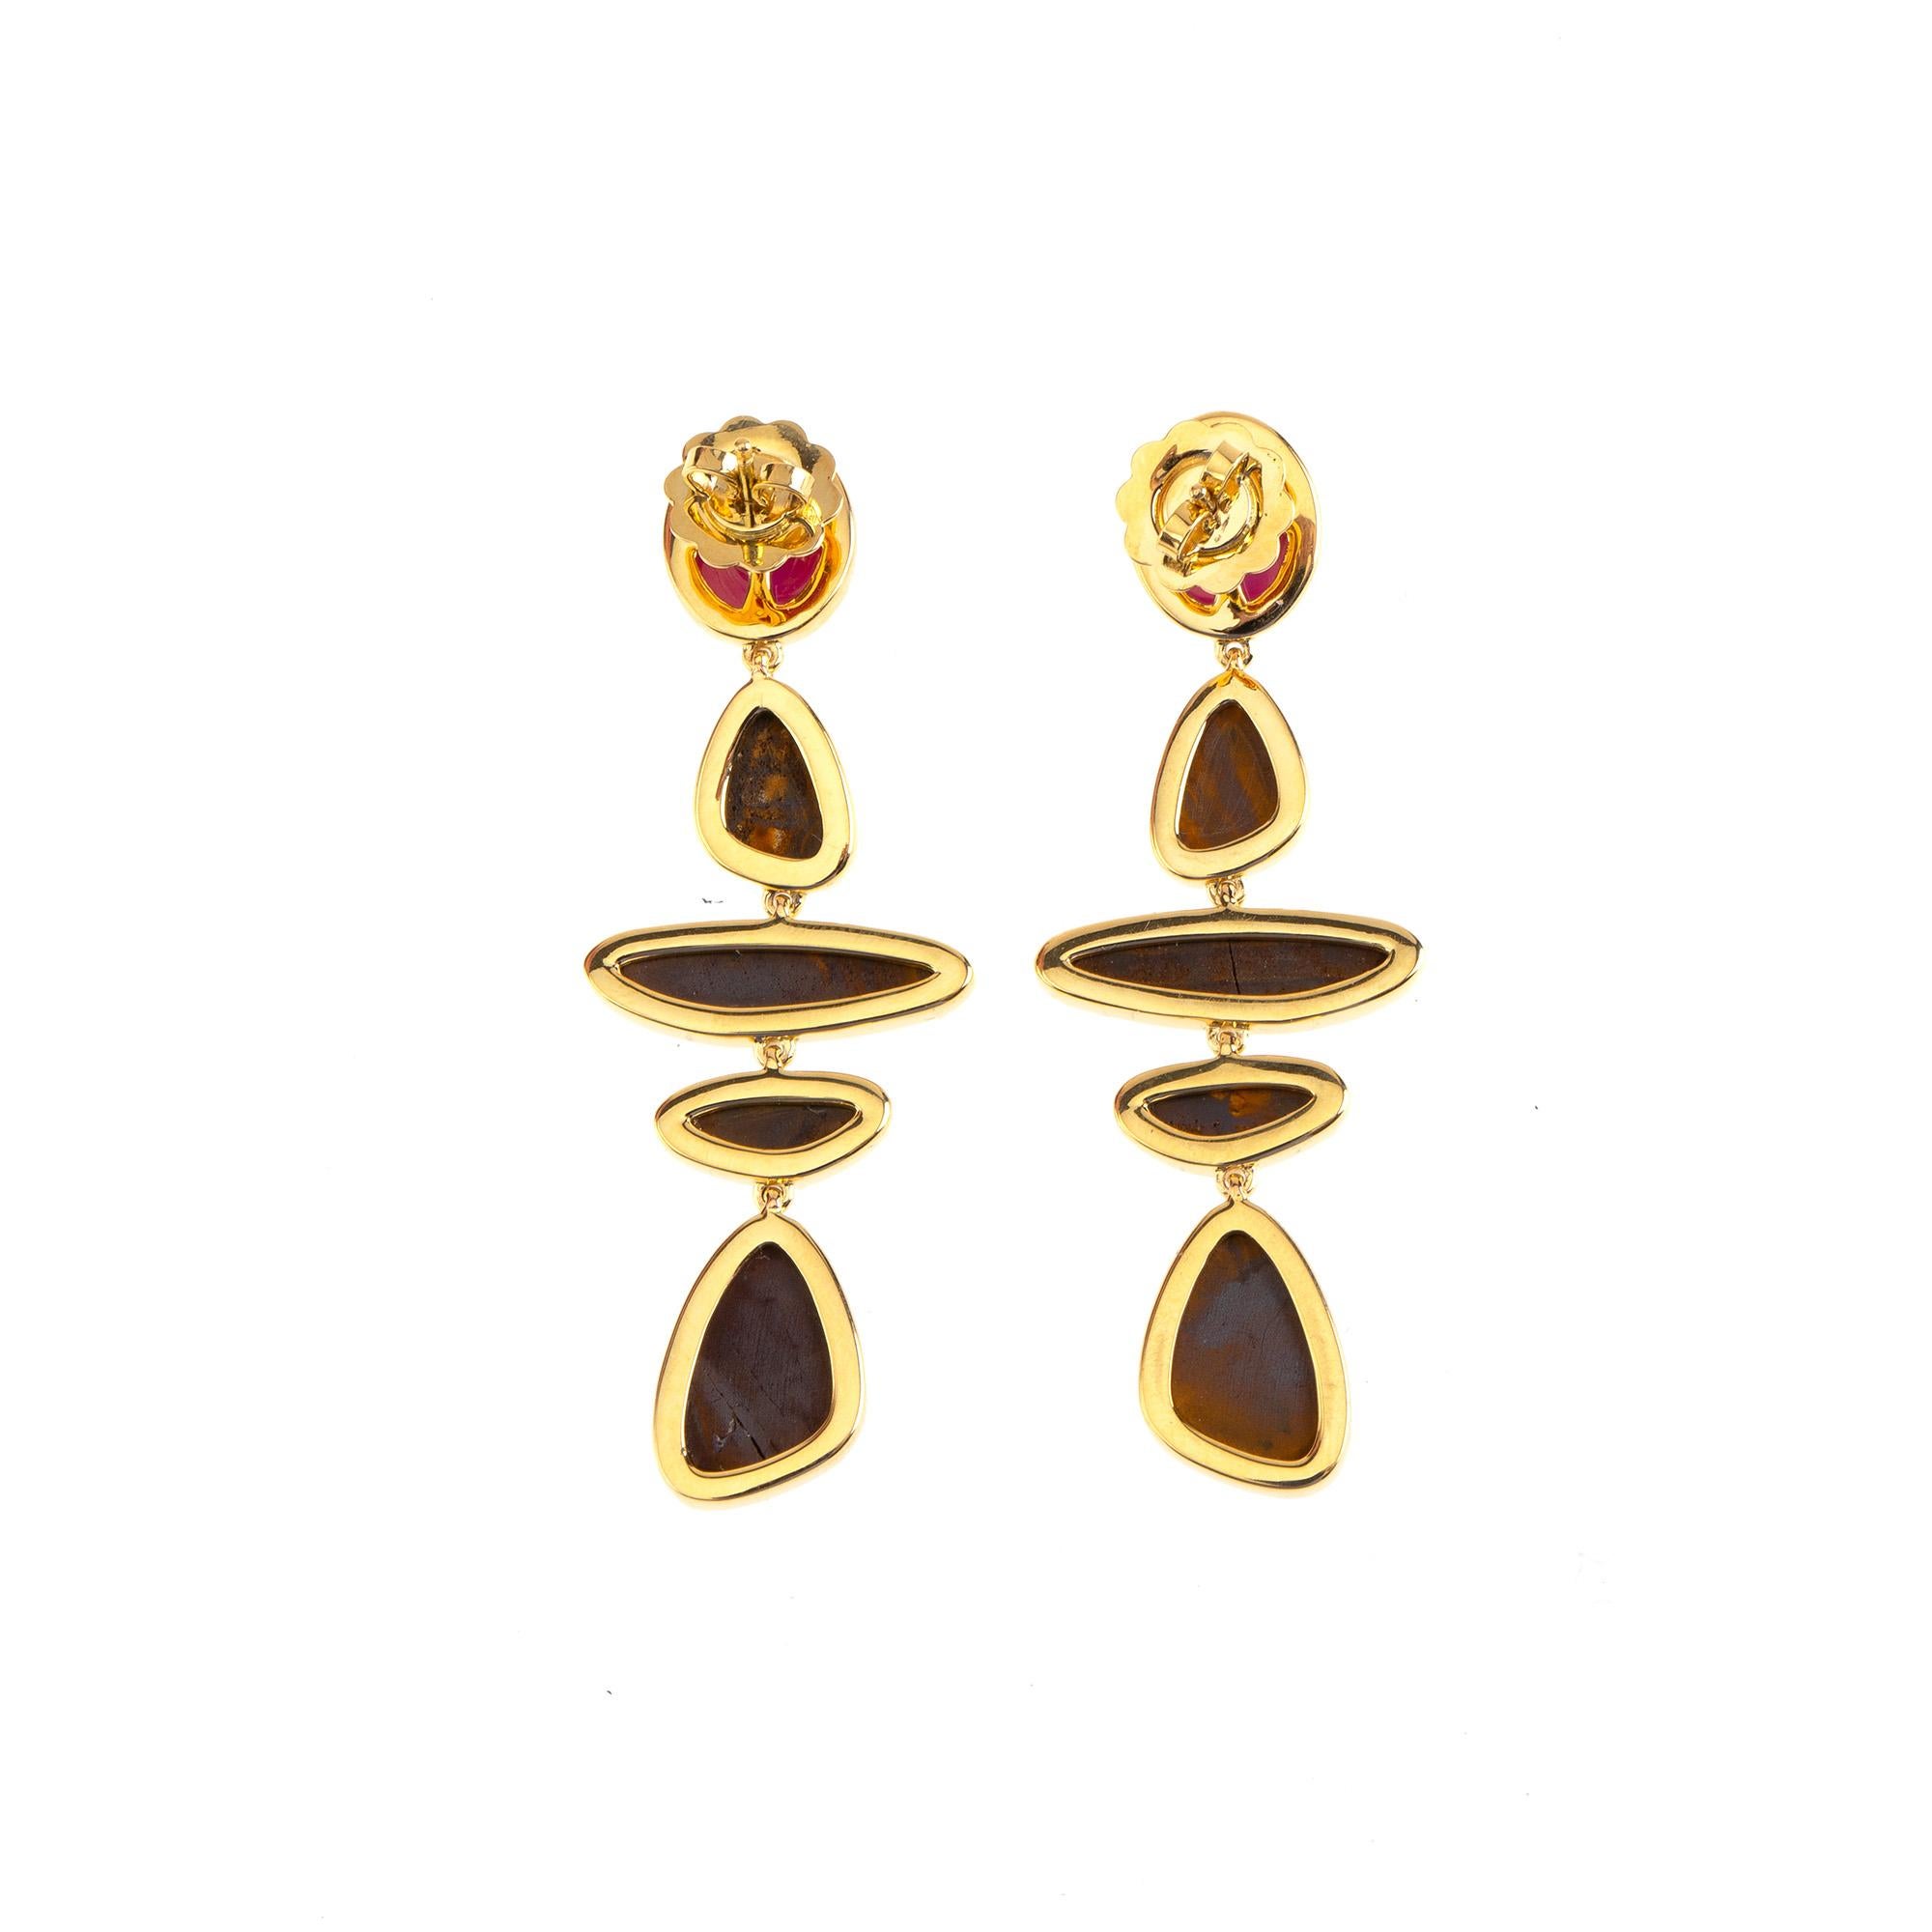 opal star earrings